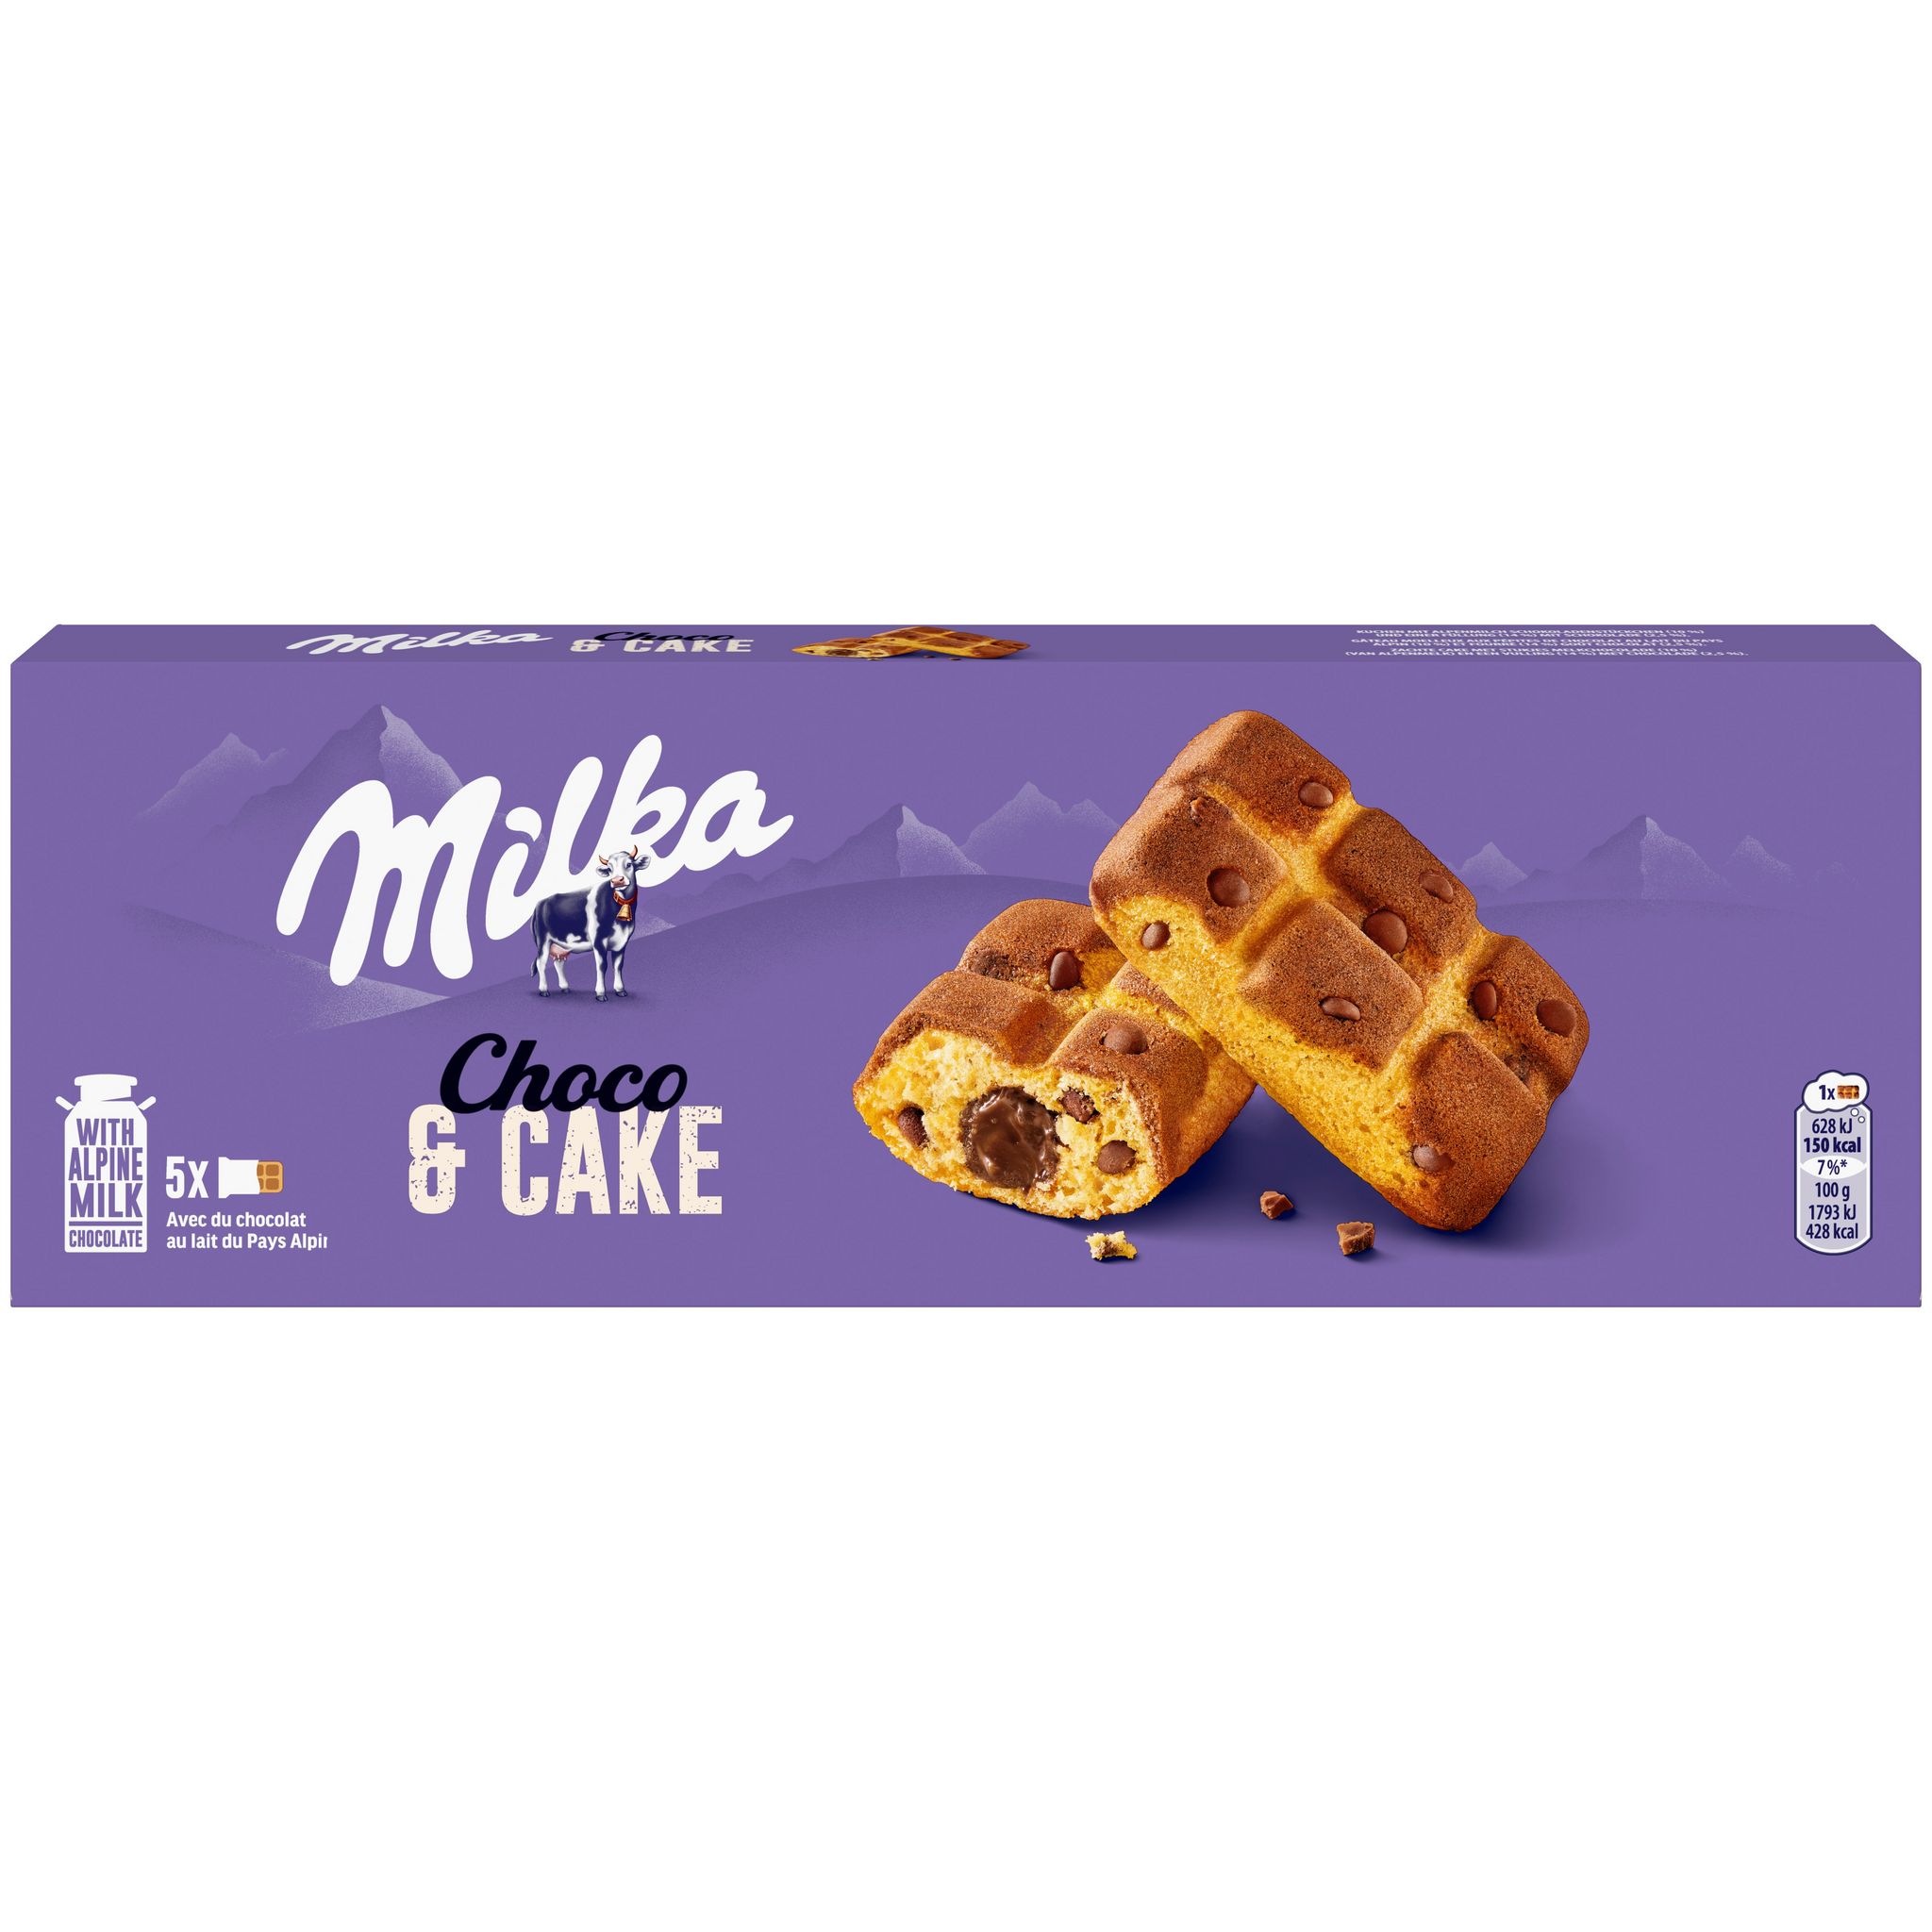 Gâteaux fourrés au chocolat Choc & Choc MILKA : Le paquet de 7 sachets -  175 g à Prix Carrefour